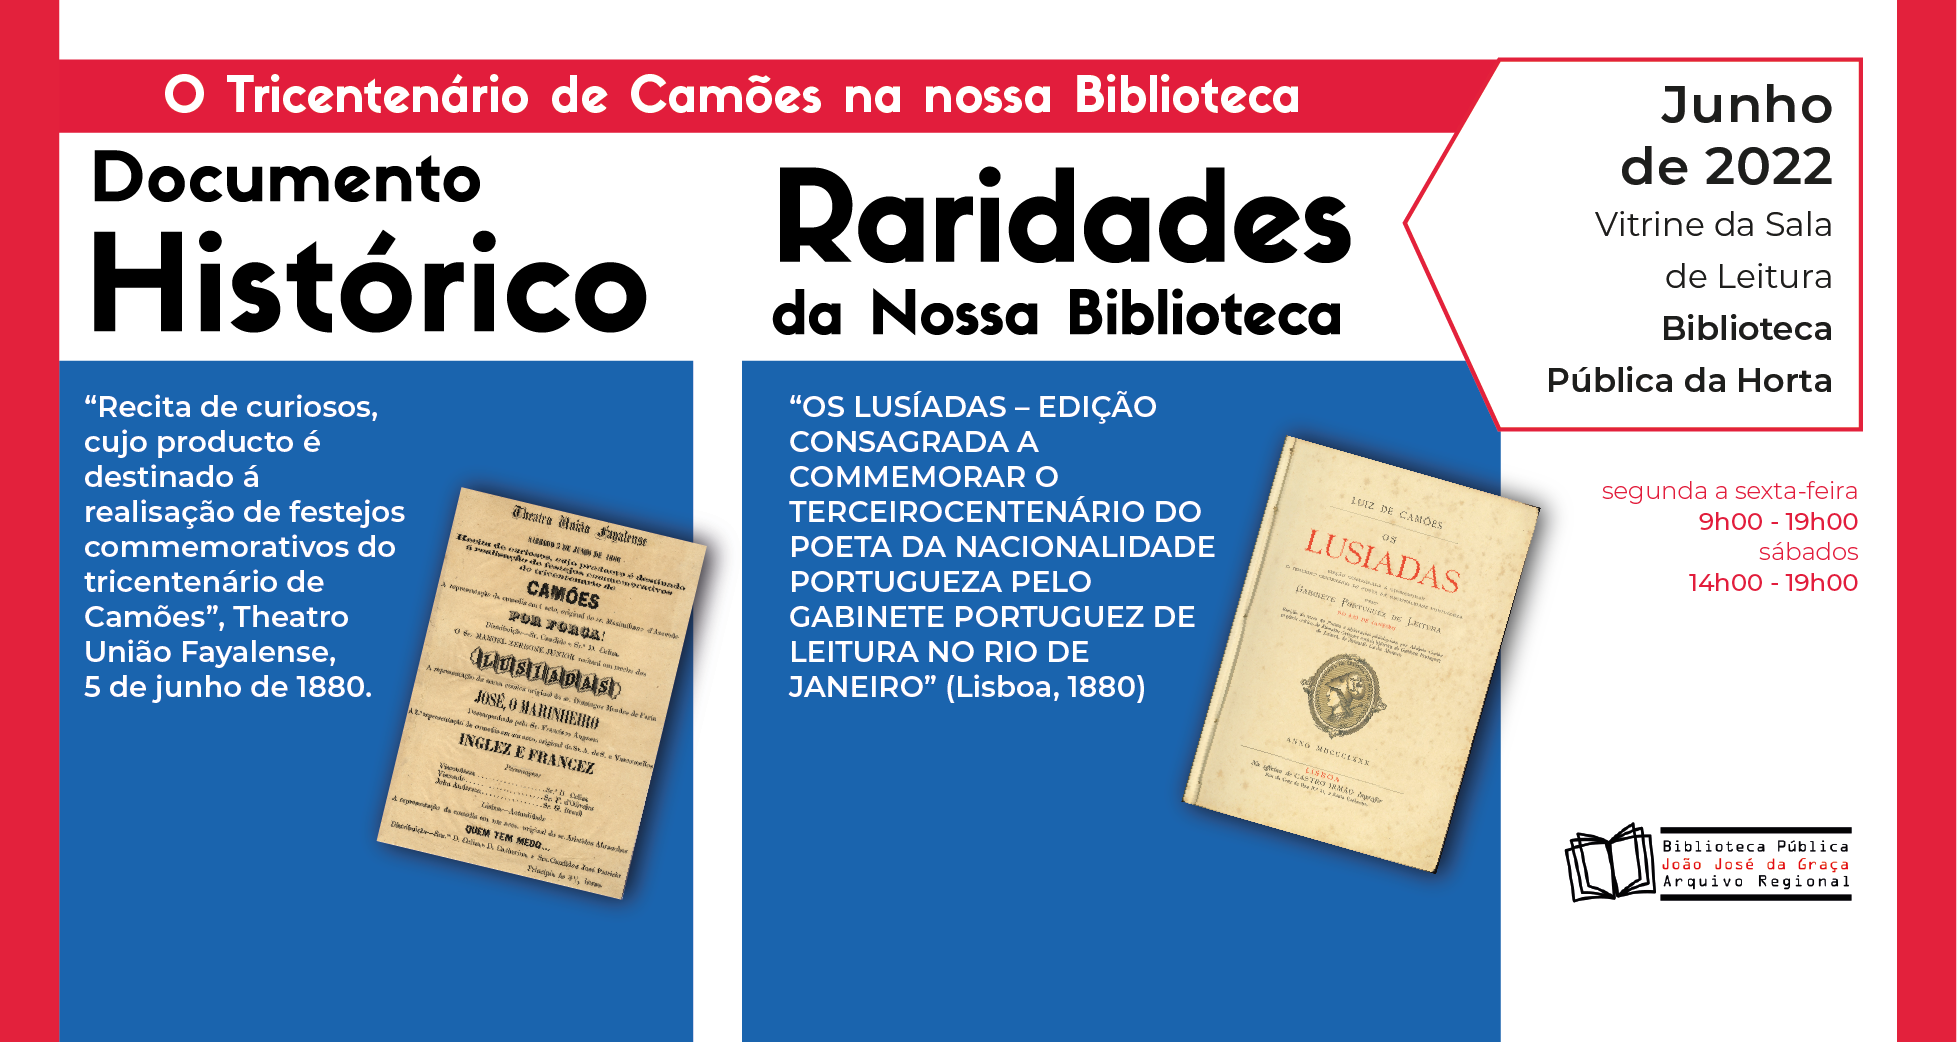 Documento Histórico & Raridades da Nossa Biblioteca: Tricentenário de Camões na Nossa Biblioteca